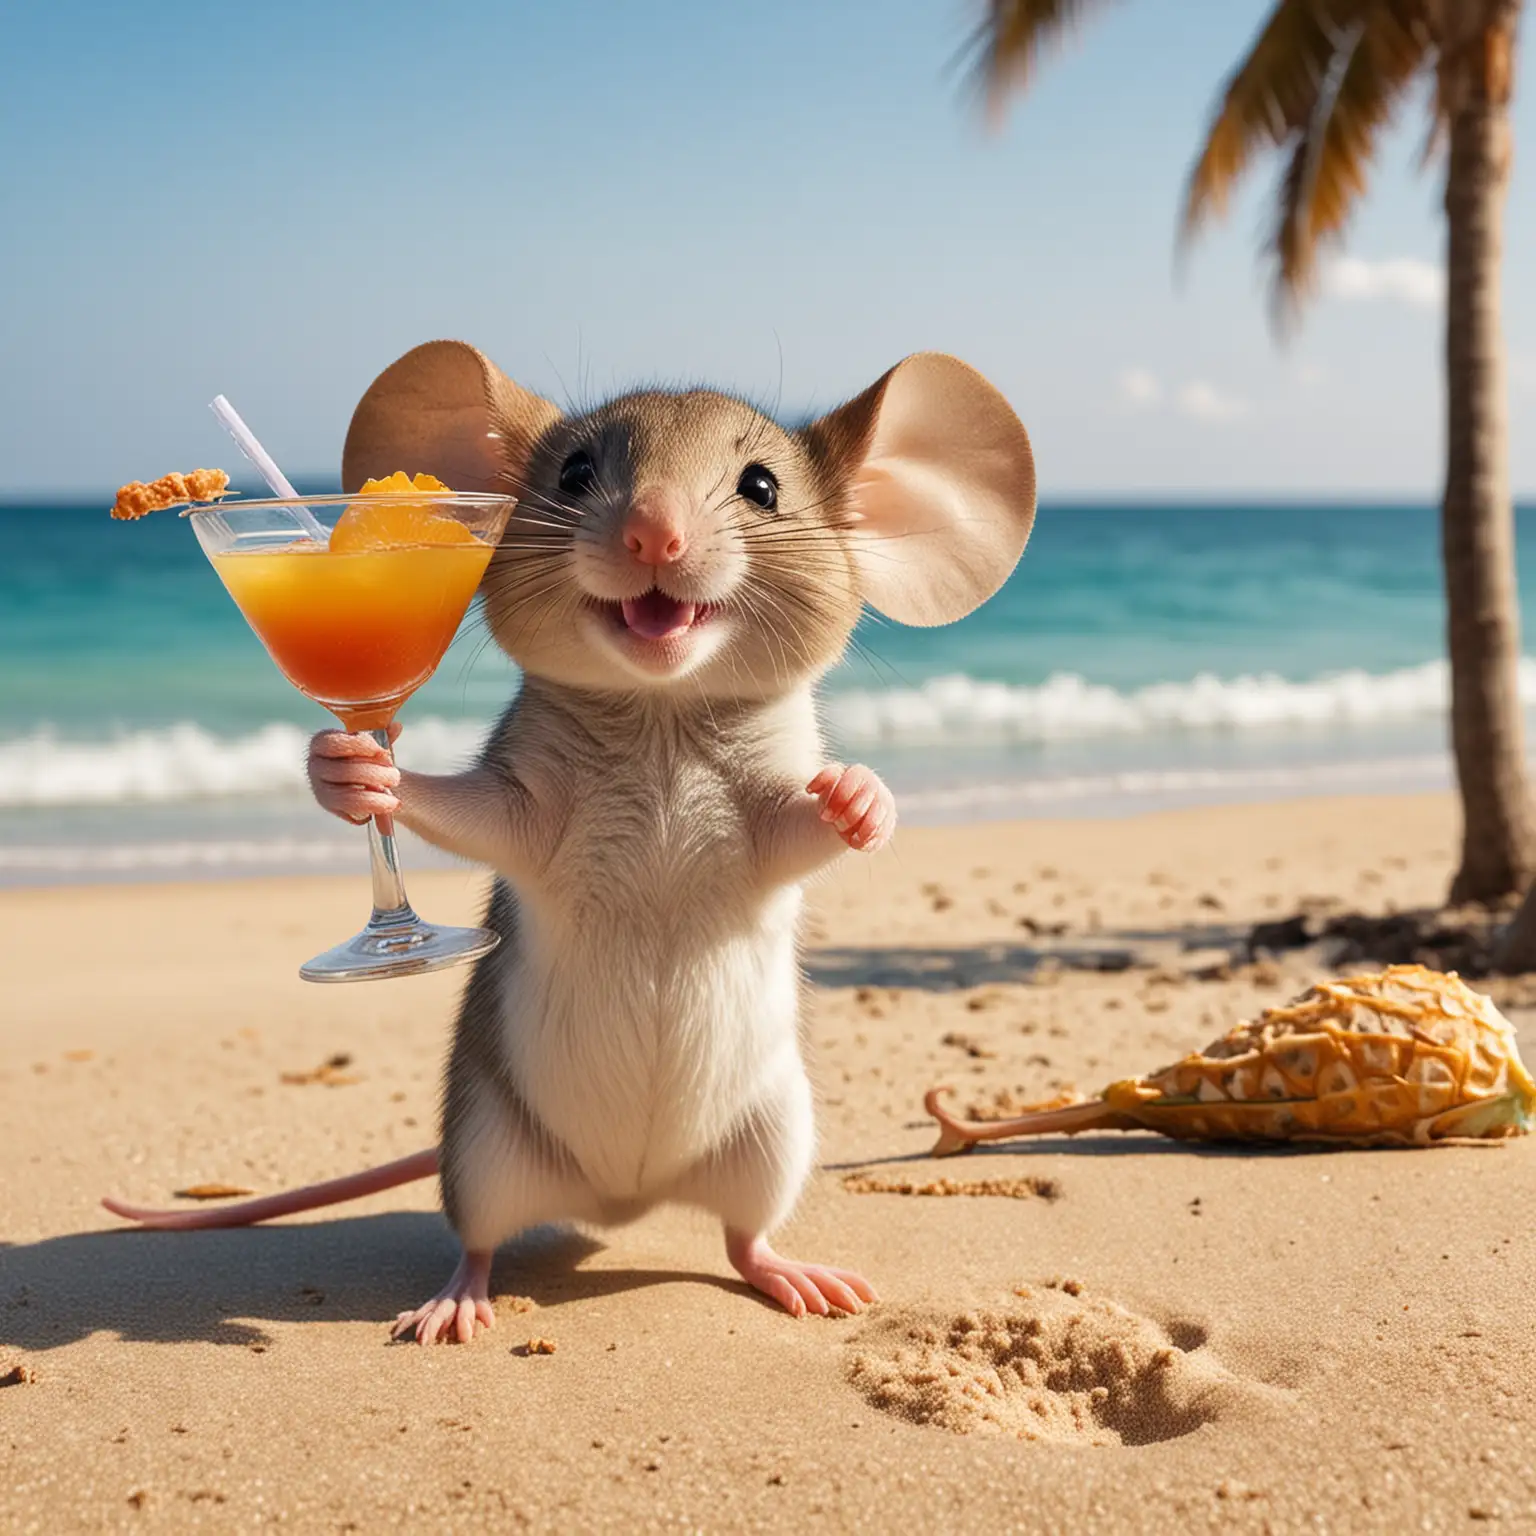 Joyful Mouse Enjoying a Tropical Cocktail on Sandy Beach